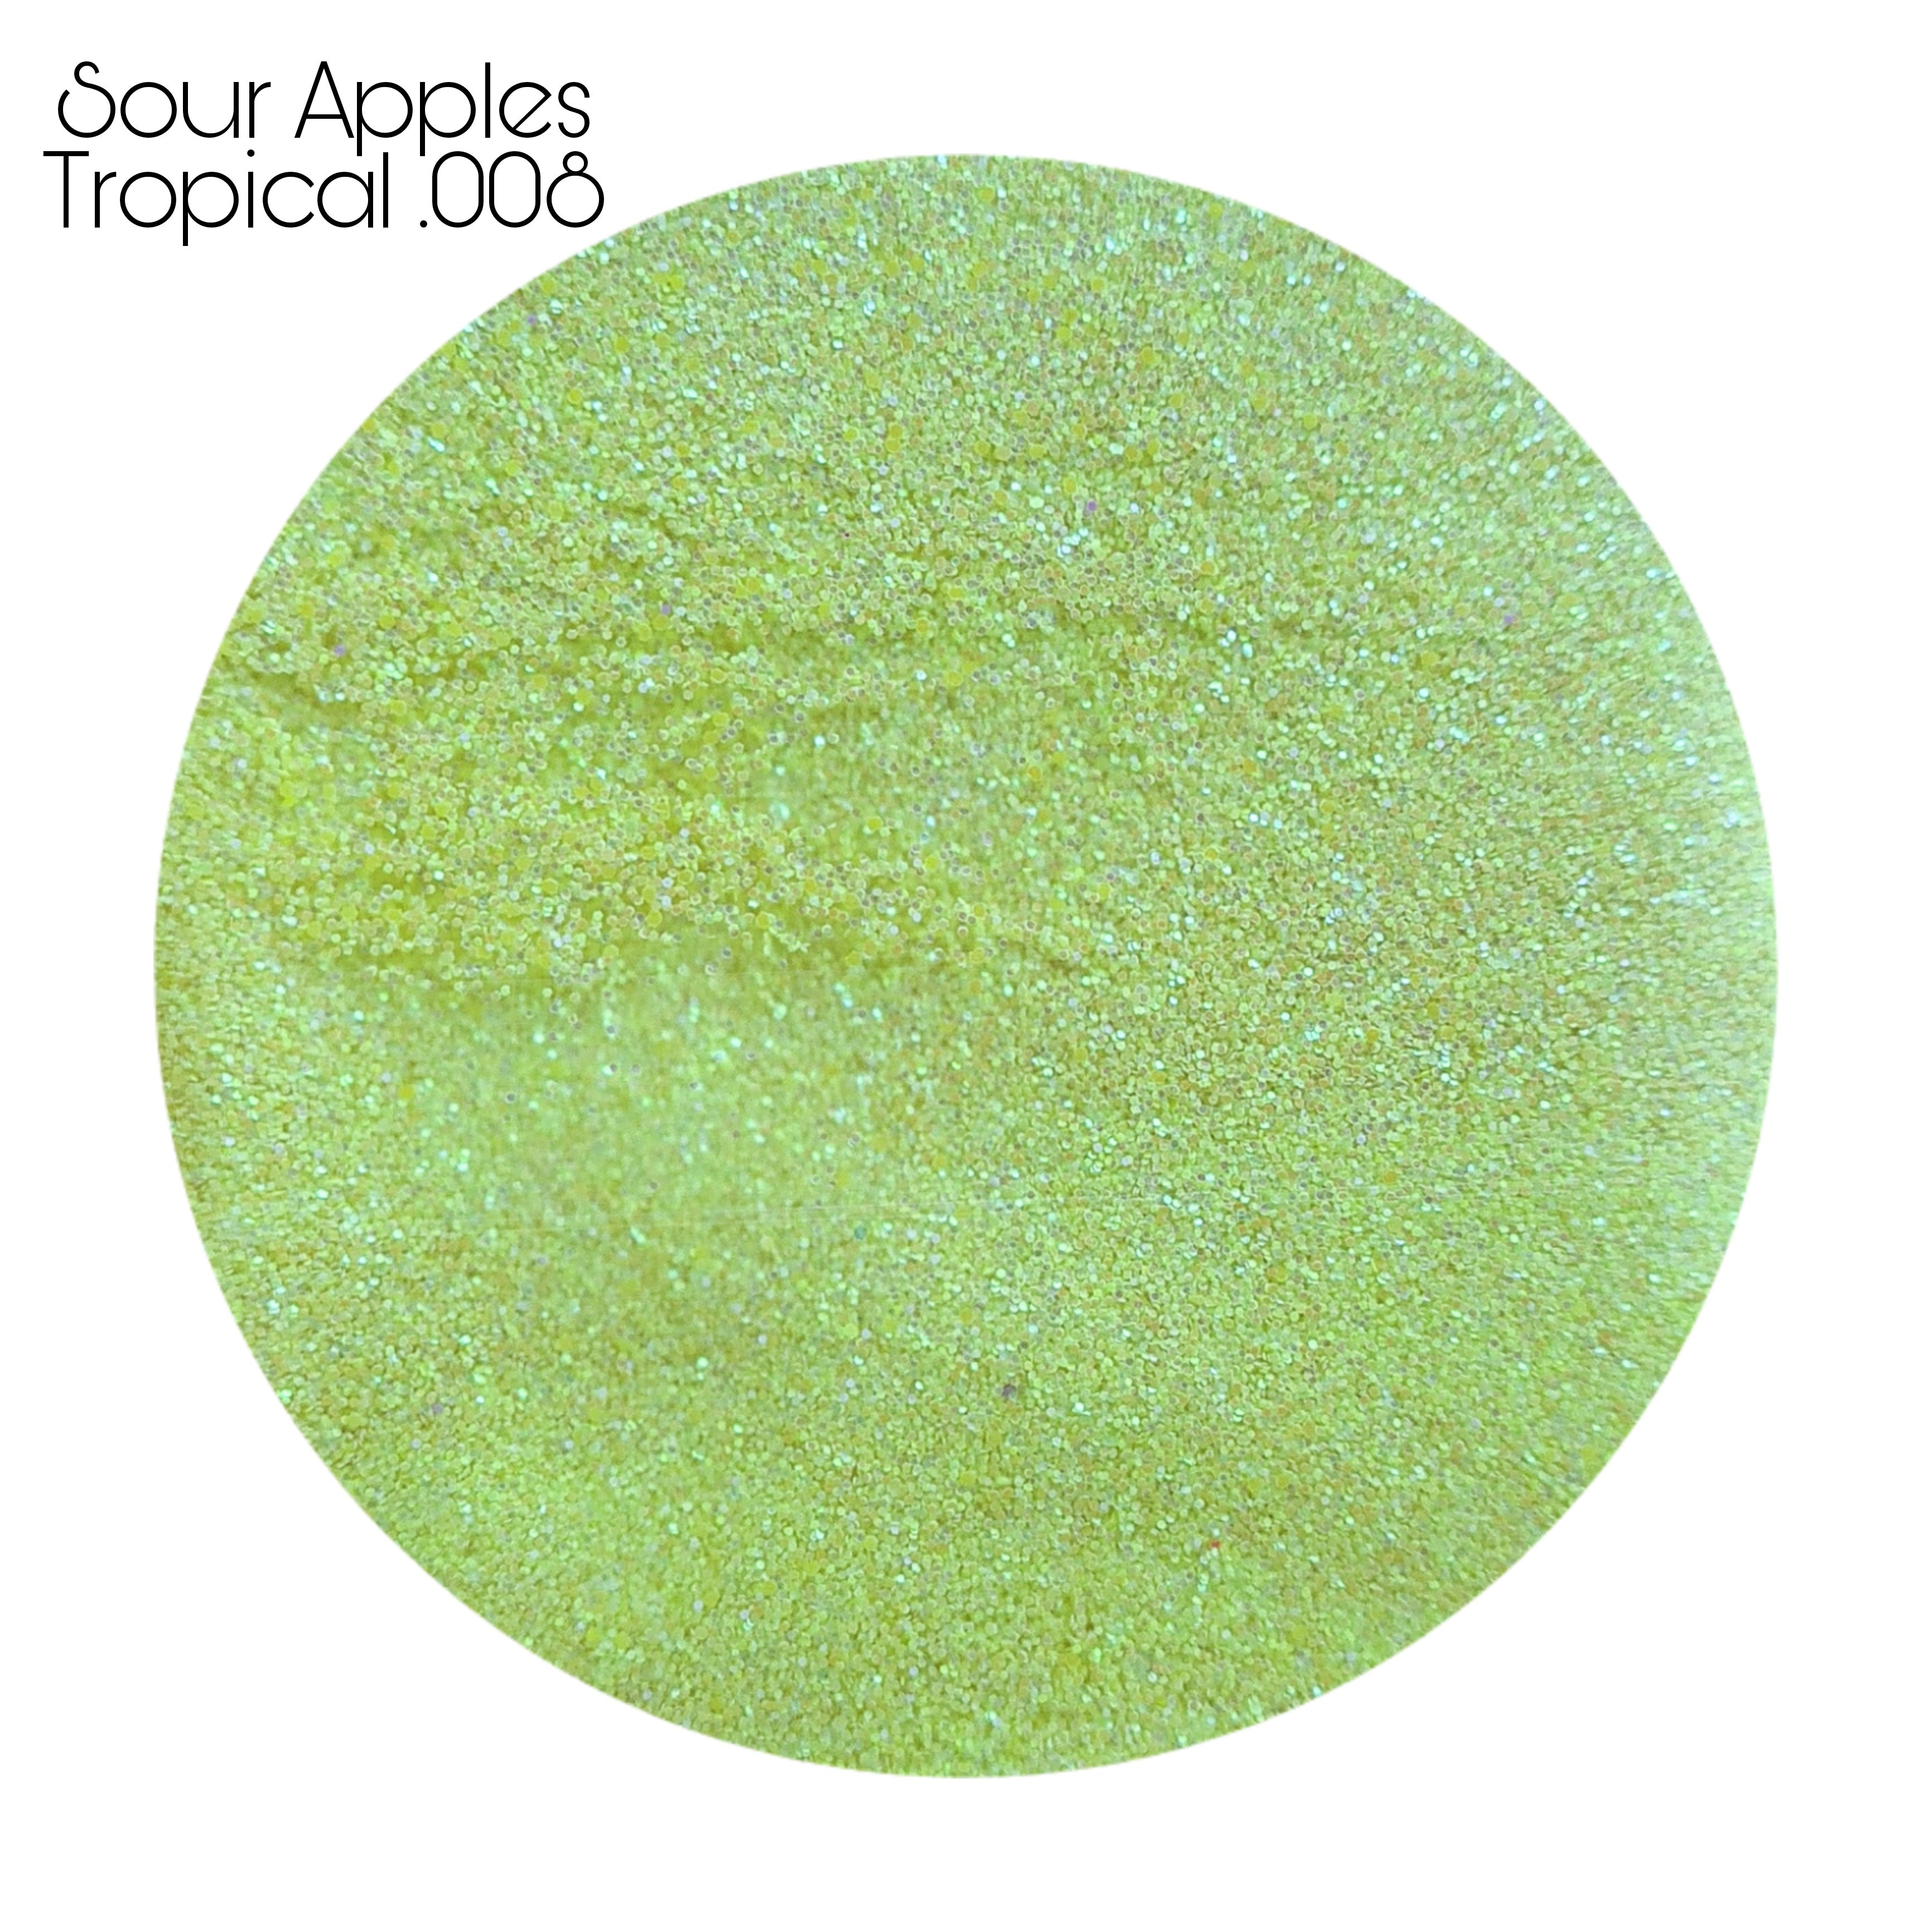 Sour Apples Tropical .008 20 GRAMS